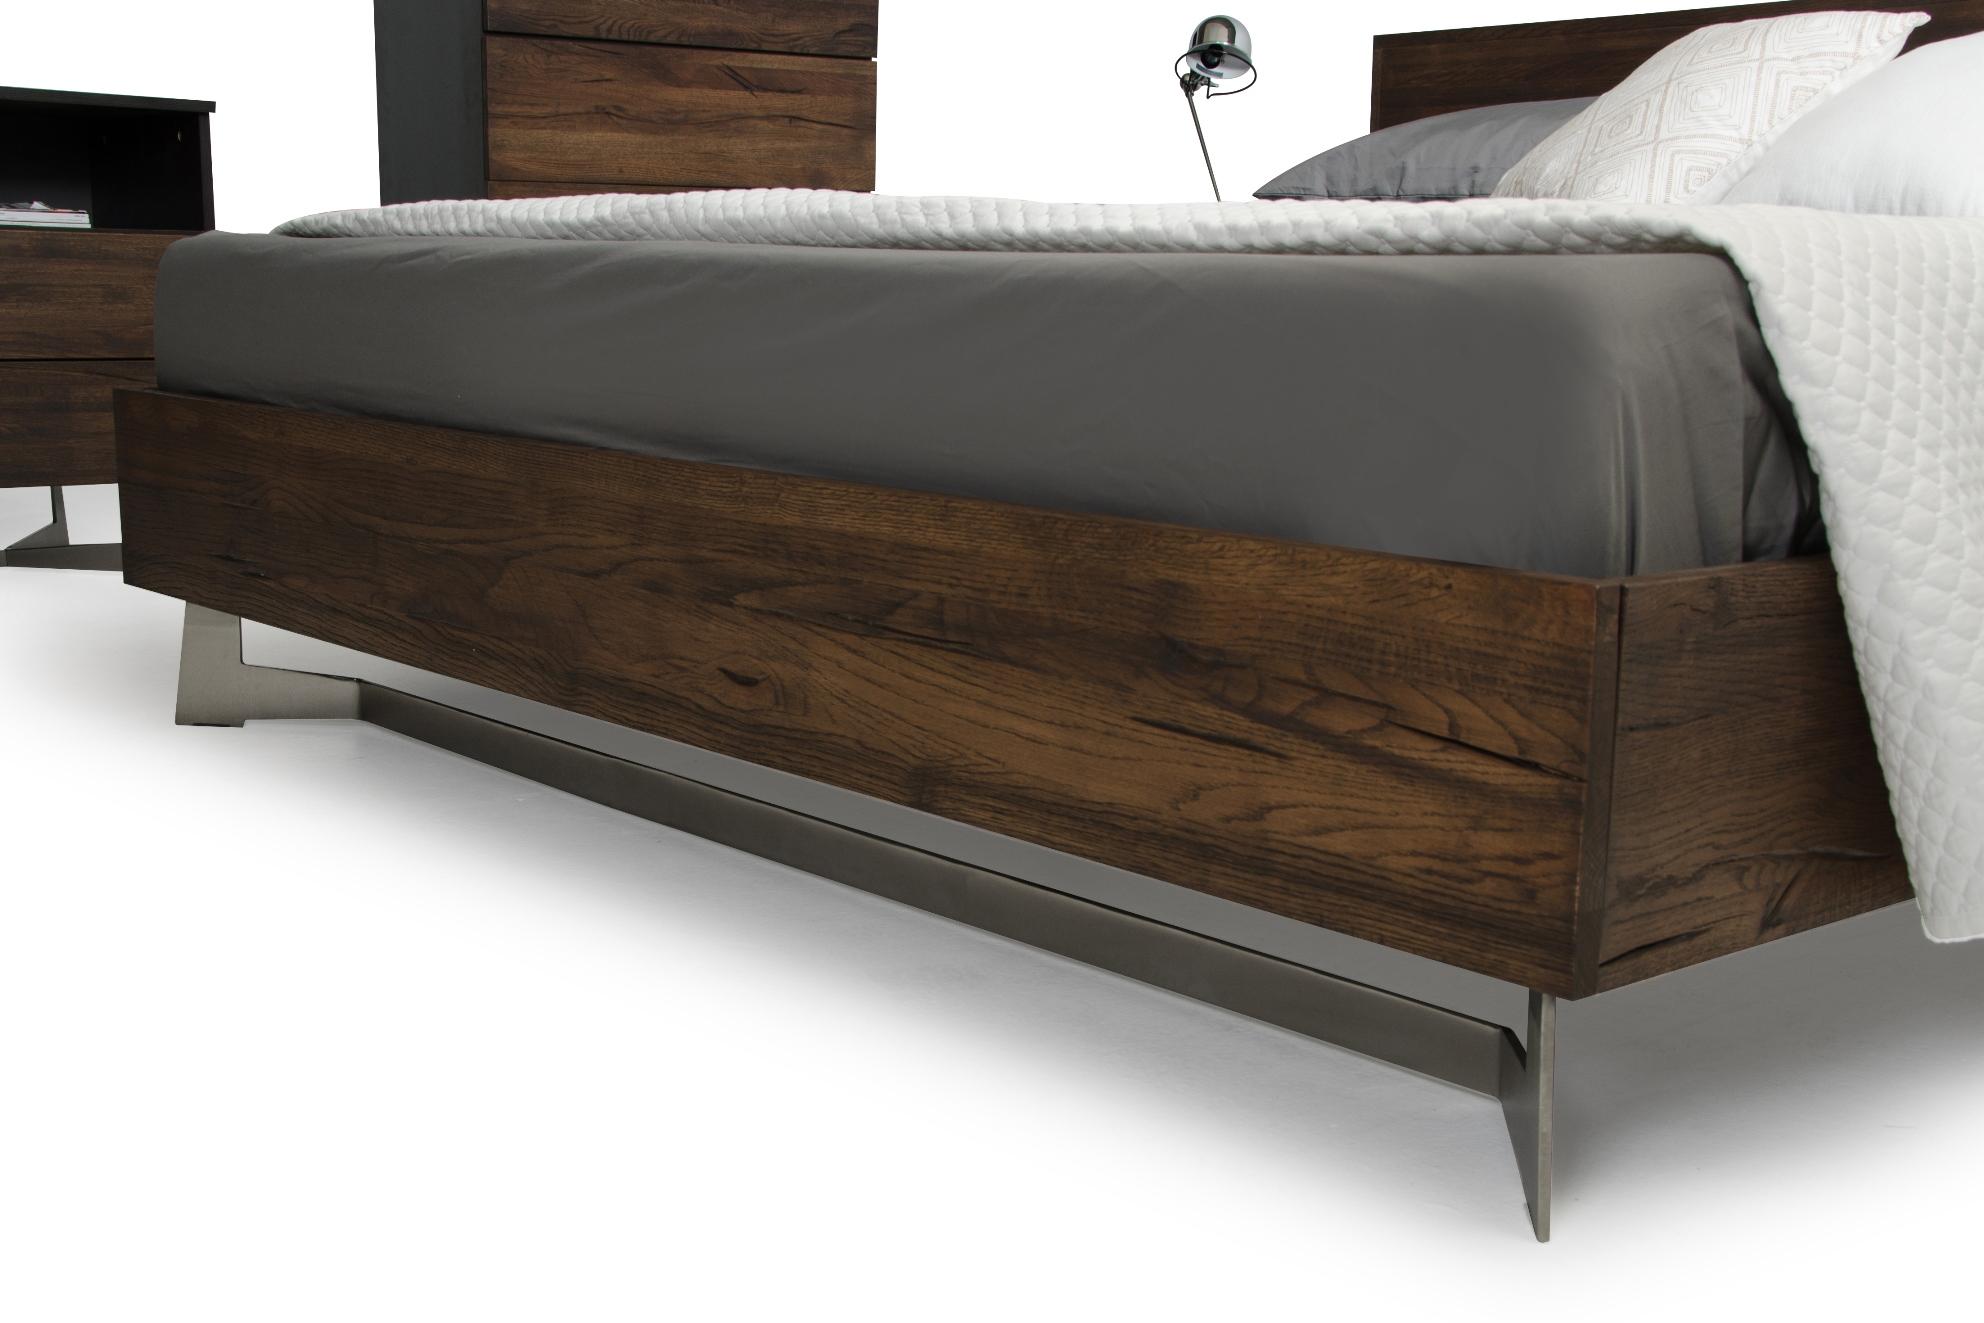 

    
VGEDWHARTON-BED-EK-Set-3 VIG Furniture Platform Bedroom Set
